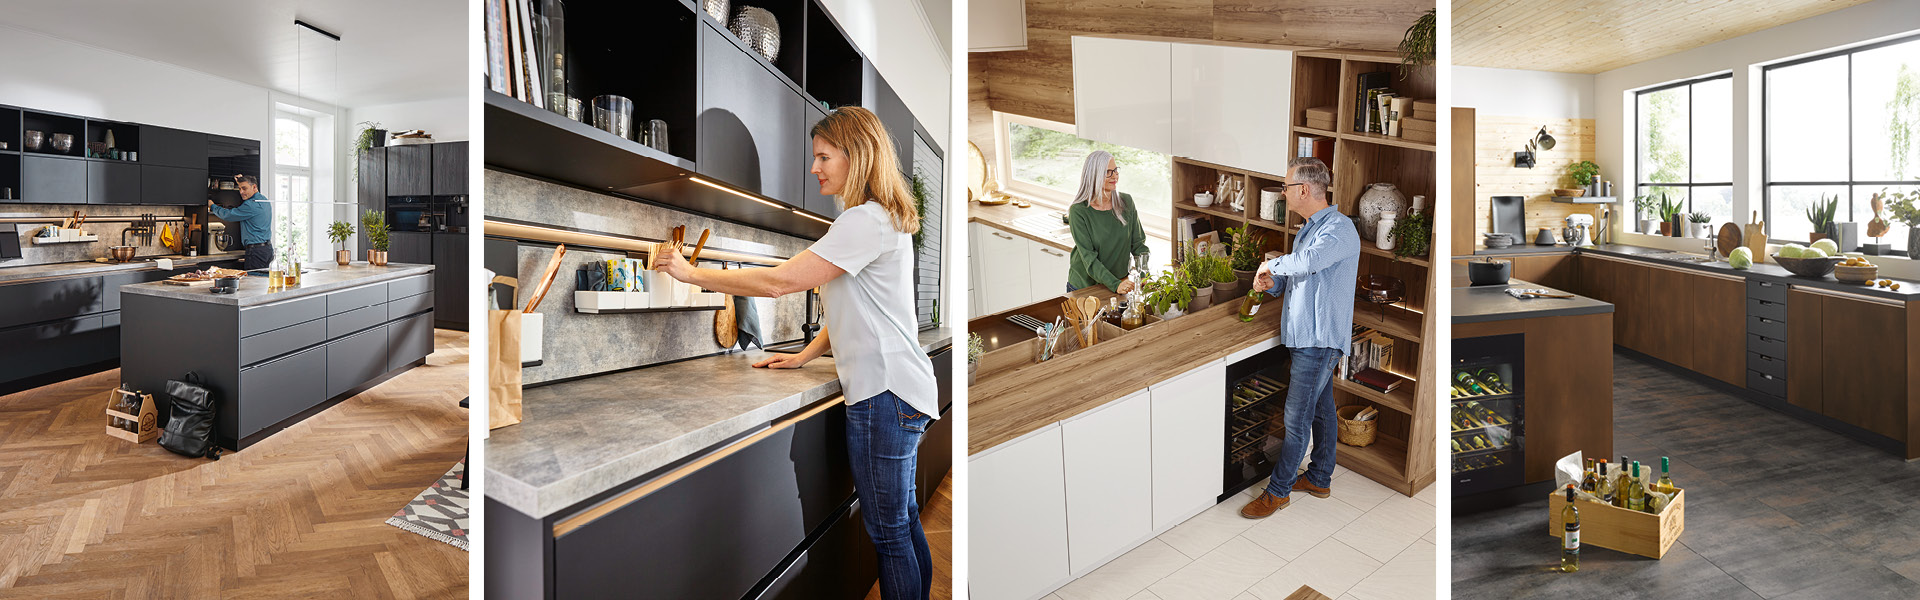 Der Trend in der Küche geht hin zu dunklen Farben und natürlichen Materialien. Eine Arbeitsplatte aus Massivholz oder Naturstein wie Granit oder Marmor macht sich sicherlich gut in Ihrer schicken Küche.